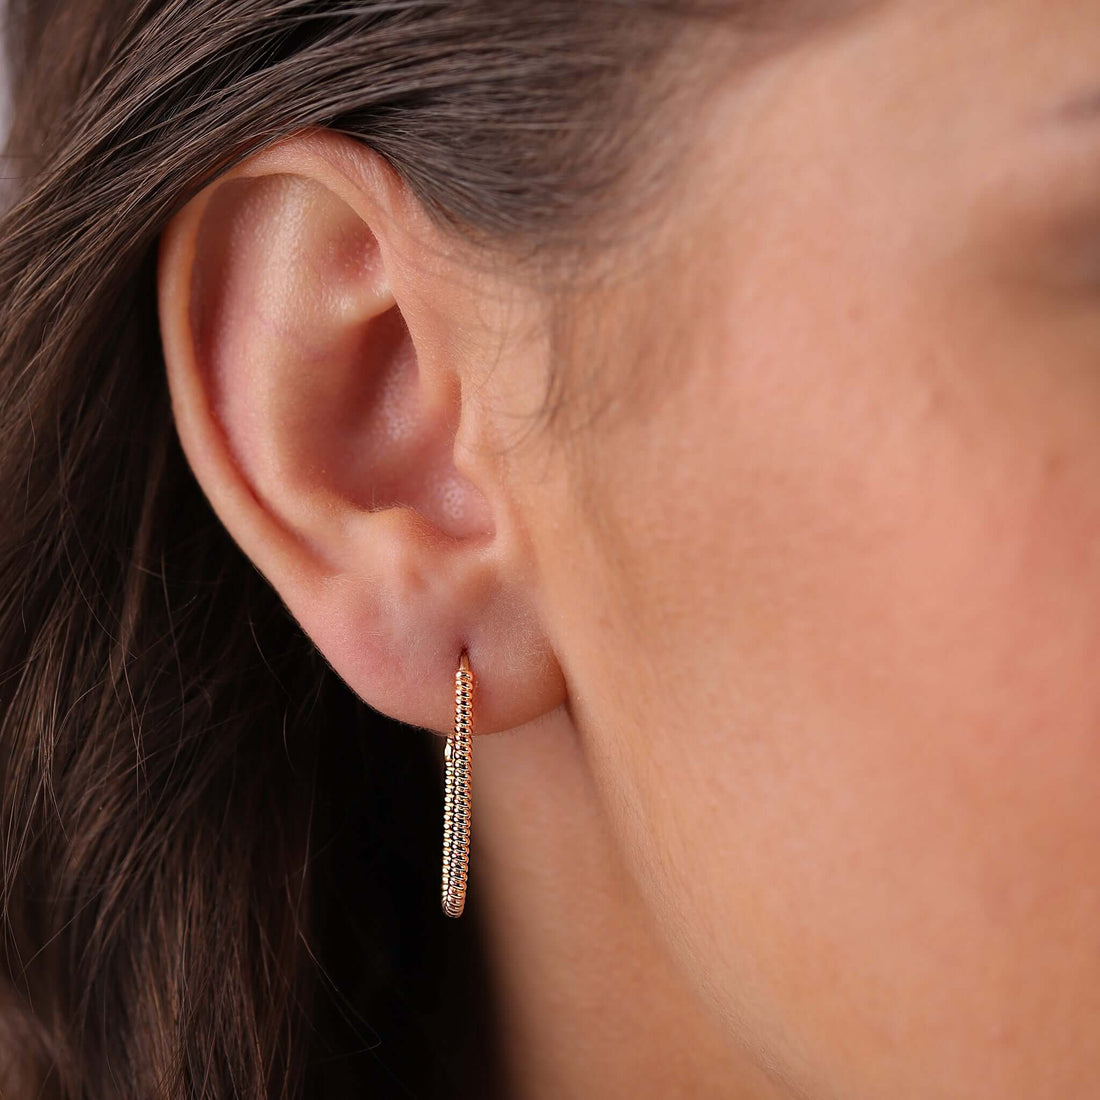 Jewelry Twist Hoops | Large Gold Earrings | 14K - Rose / Pair - Diamond earrings Zengoda Shop online from Artisan